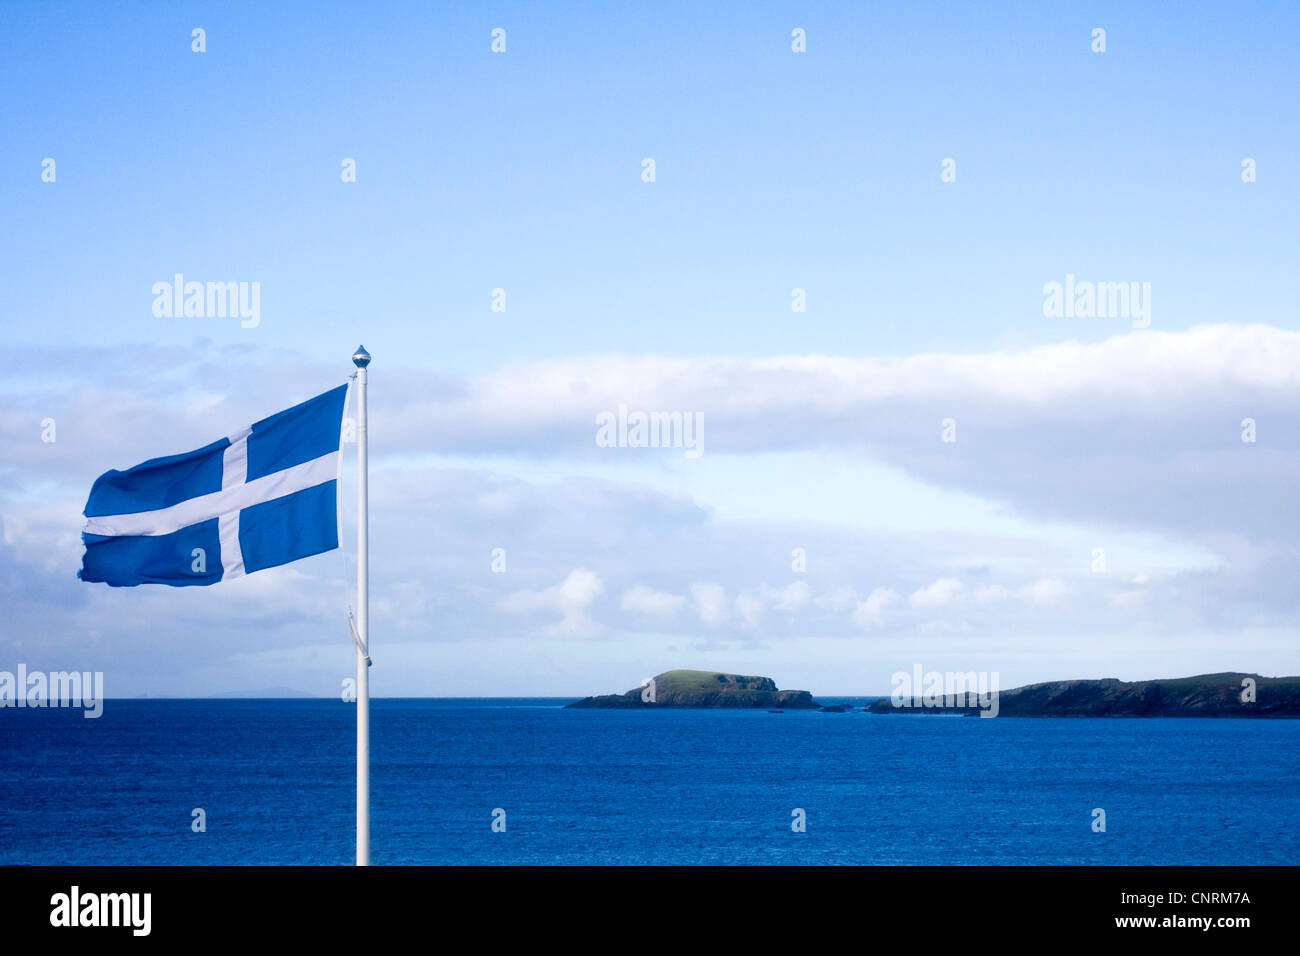 Flagge von Schottland an der Küste von der wichtigsten Insel Shetland Sumburgh, Shetland-Inseln, Schottland, Vereinigtes Königreich Stockfoto